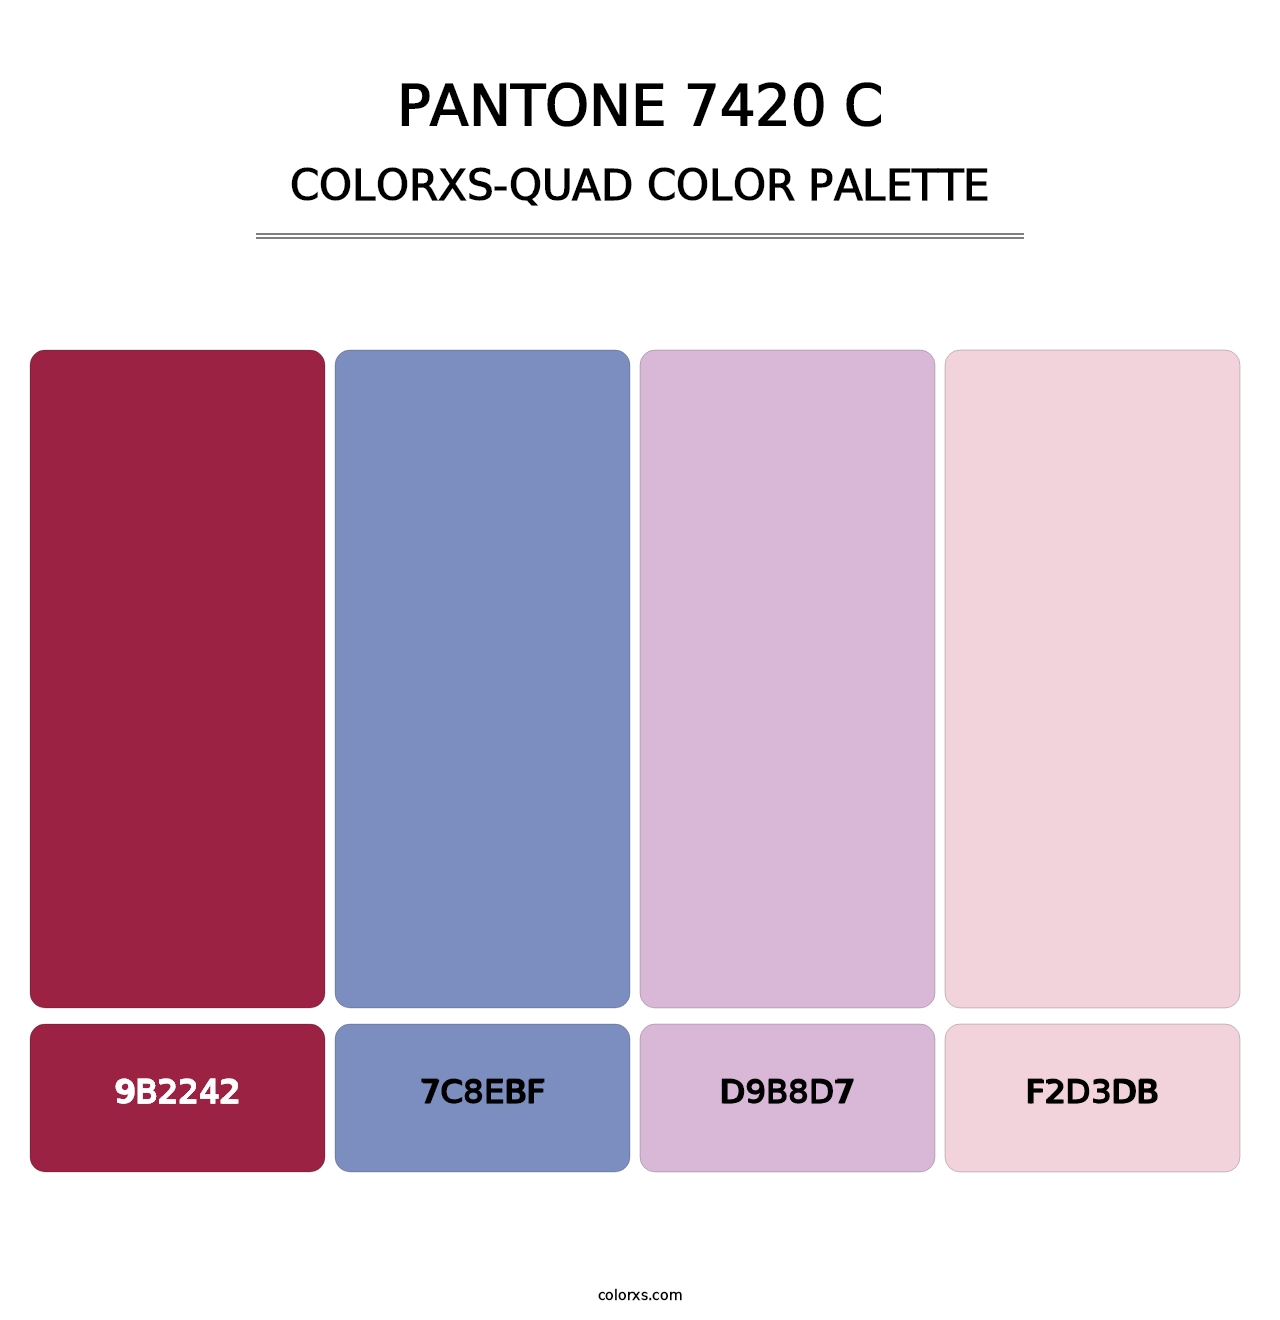 PANTONE 7420 C - Colorxs Quad Palette